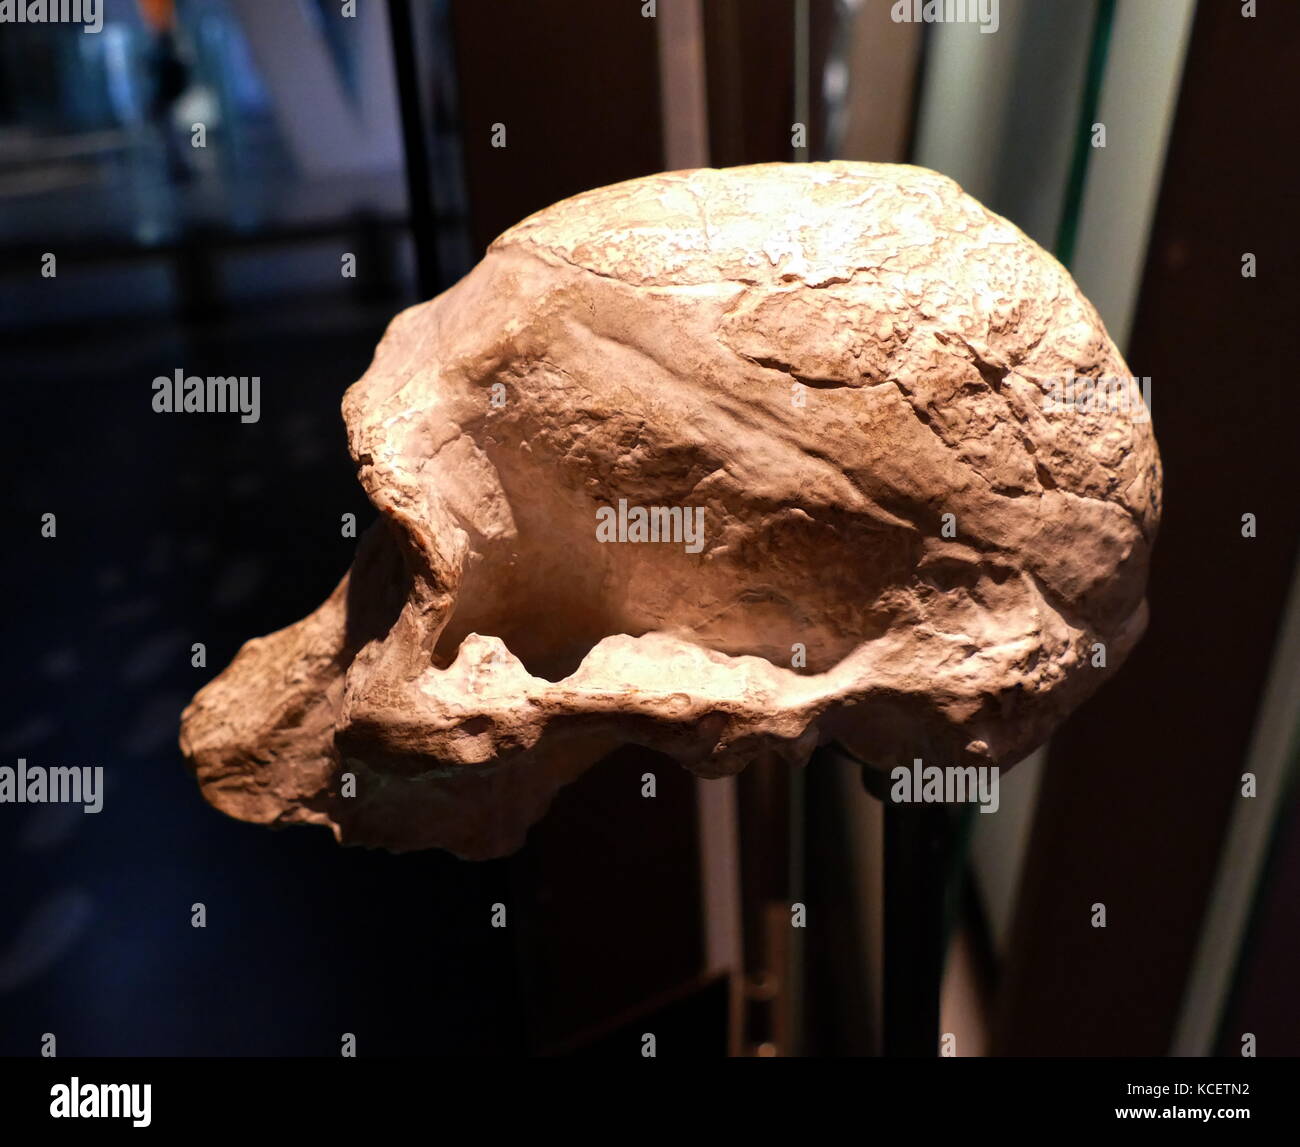 Australopithecus Africanus, einem erloschenen (fossilen) Arten von den Australopithecinen, die erste von einem frühen Ape-Formular Arten als Homininen (1924) klassifiziert werden, zwischen 3.3 und 2.1 Millionen Jahren lebenden veraltet, oder in den späten Pliozän und frühen Pleistozän mal; es ist als ein direkter Vorfahre des modernen Menschen diskutiert. Dieser Schädel wurde bei Taung, Südafrika gefunden Stockfoto